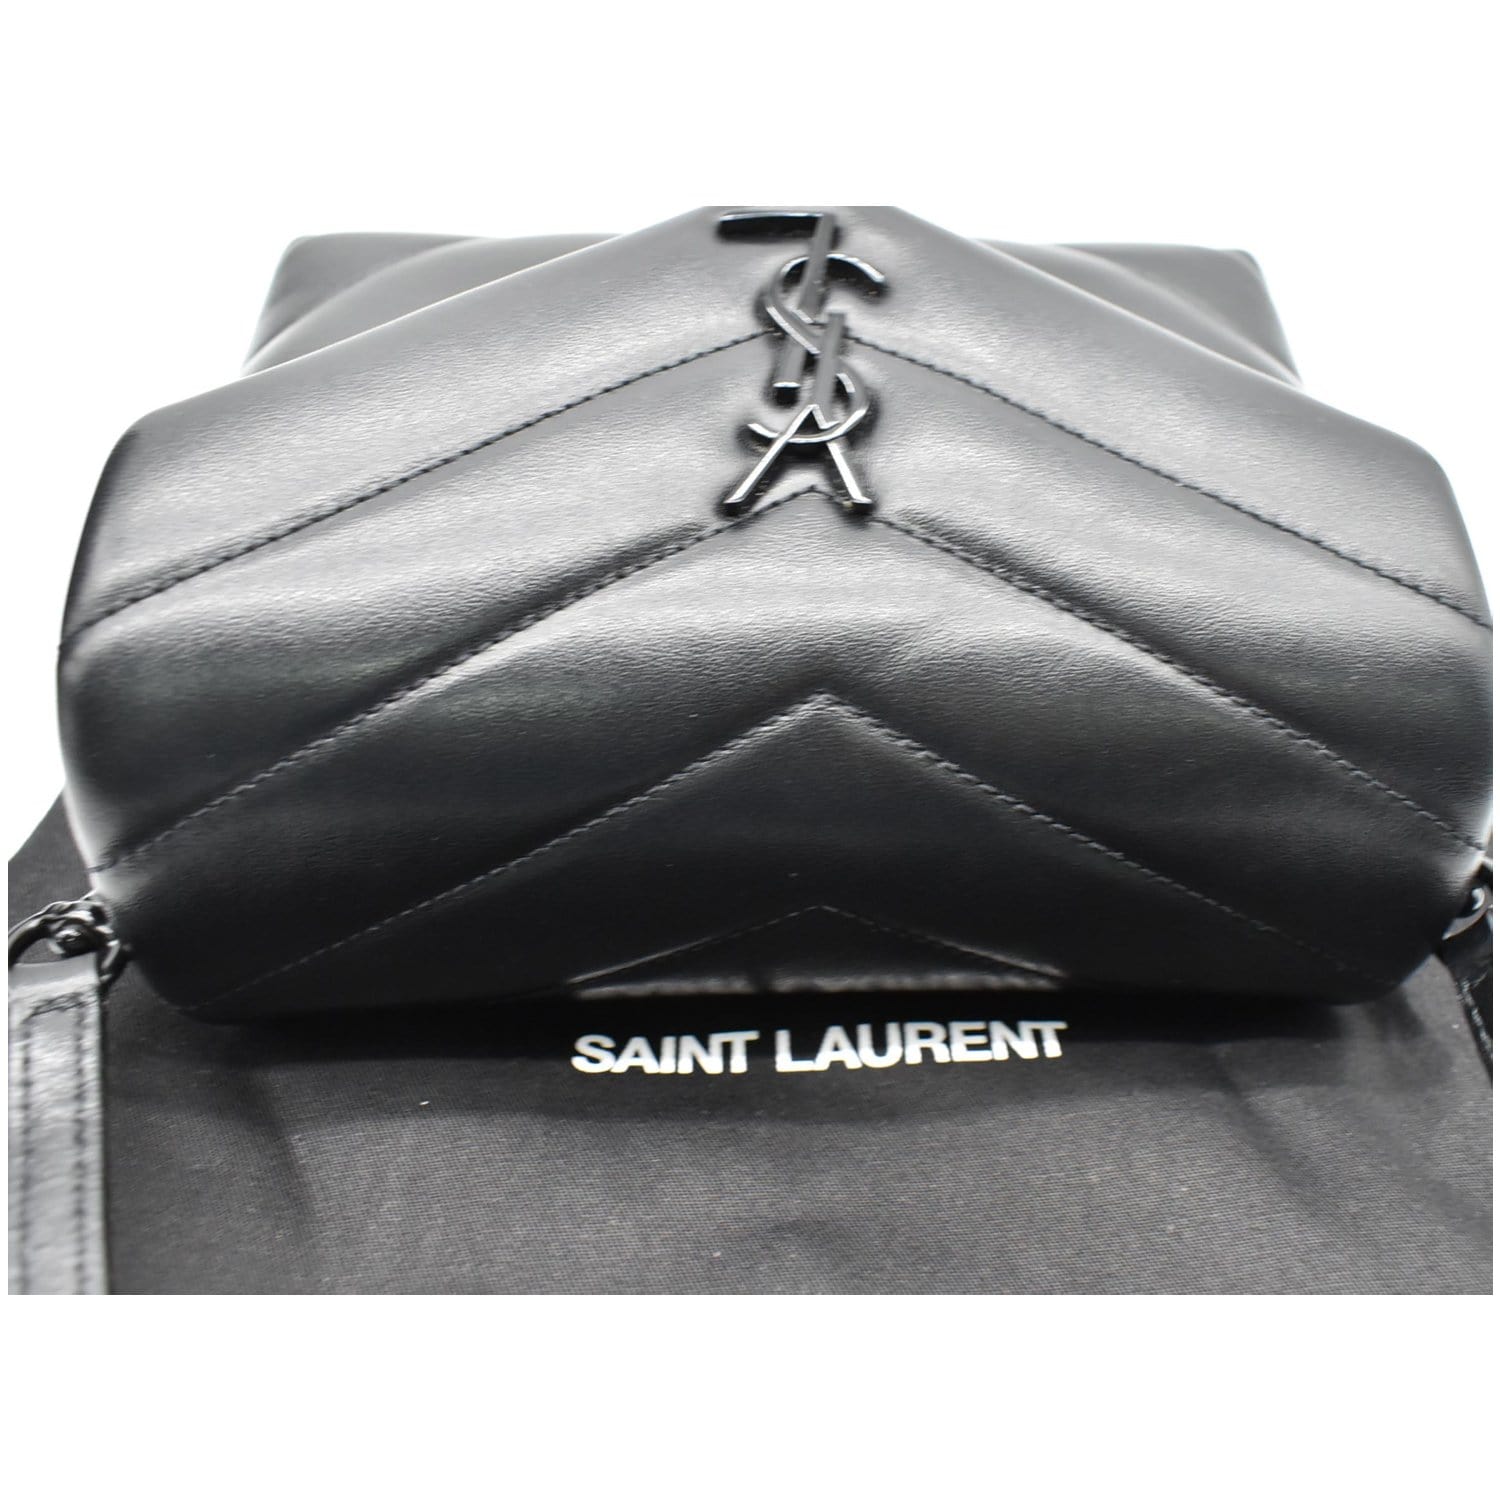 Saint Laurent Toy Loulou Matelassé Leather Crossbody Bag